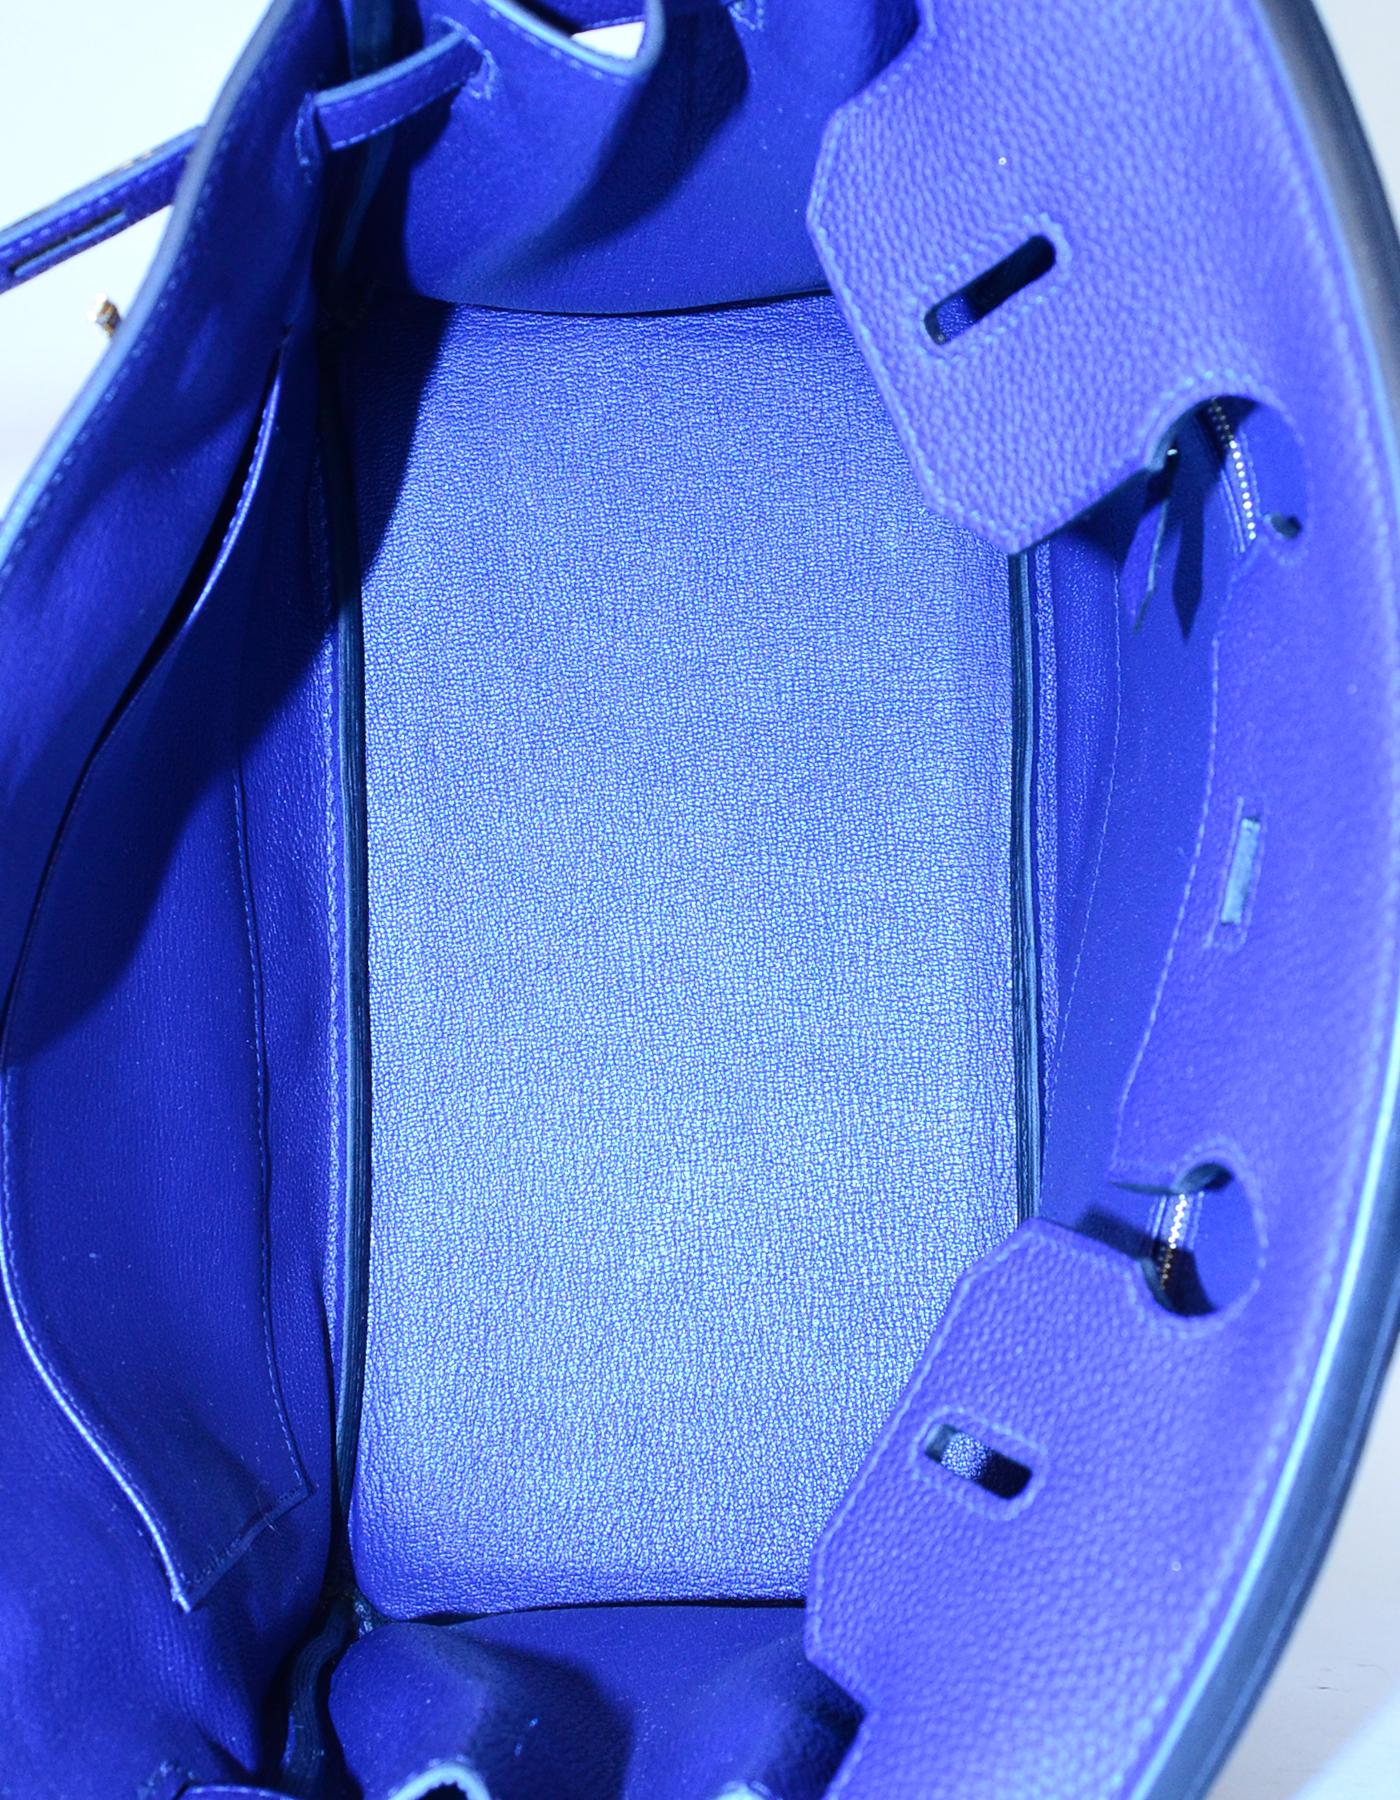 Hermes NEW IN BOX 2018 Bleu Blue Encre Togo Leather 30cm Birkin Bag w/ GHW 3